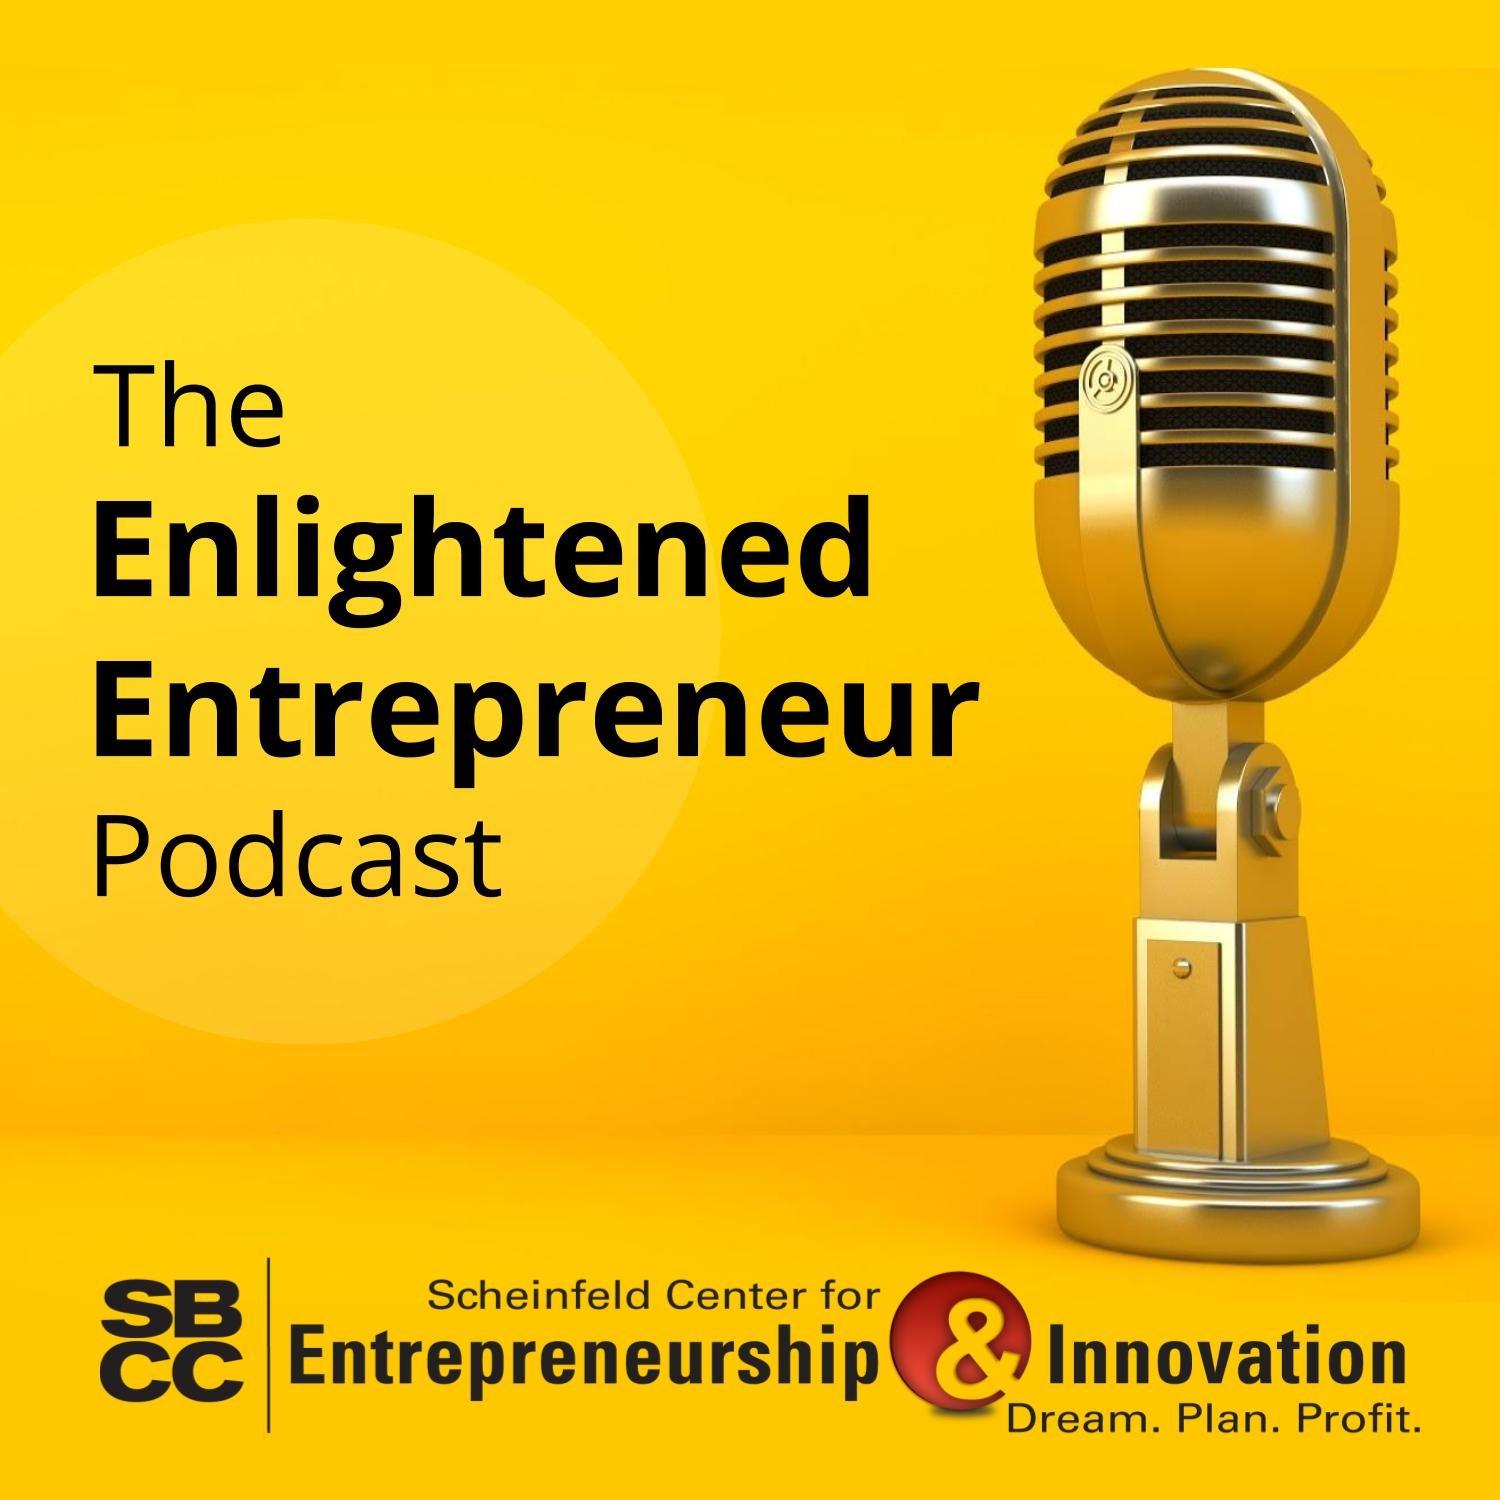 The Enlightened Entrepreneur Podcast